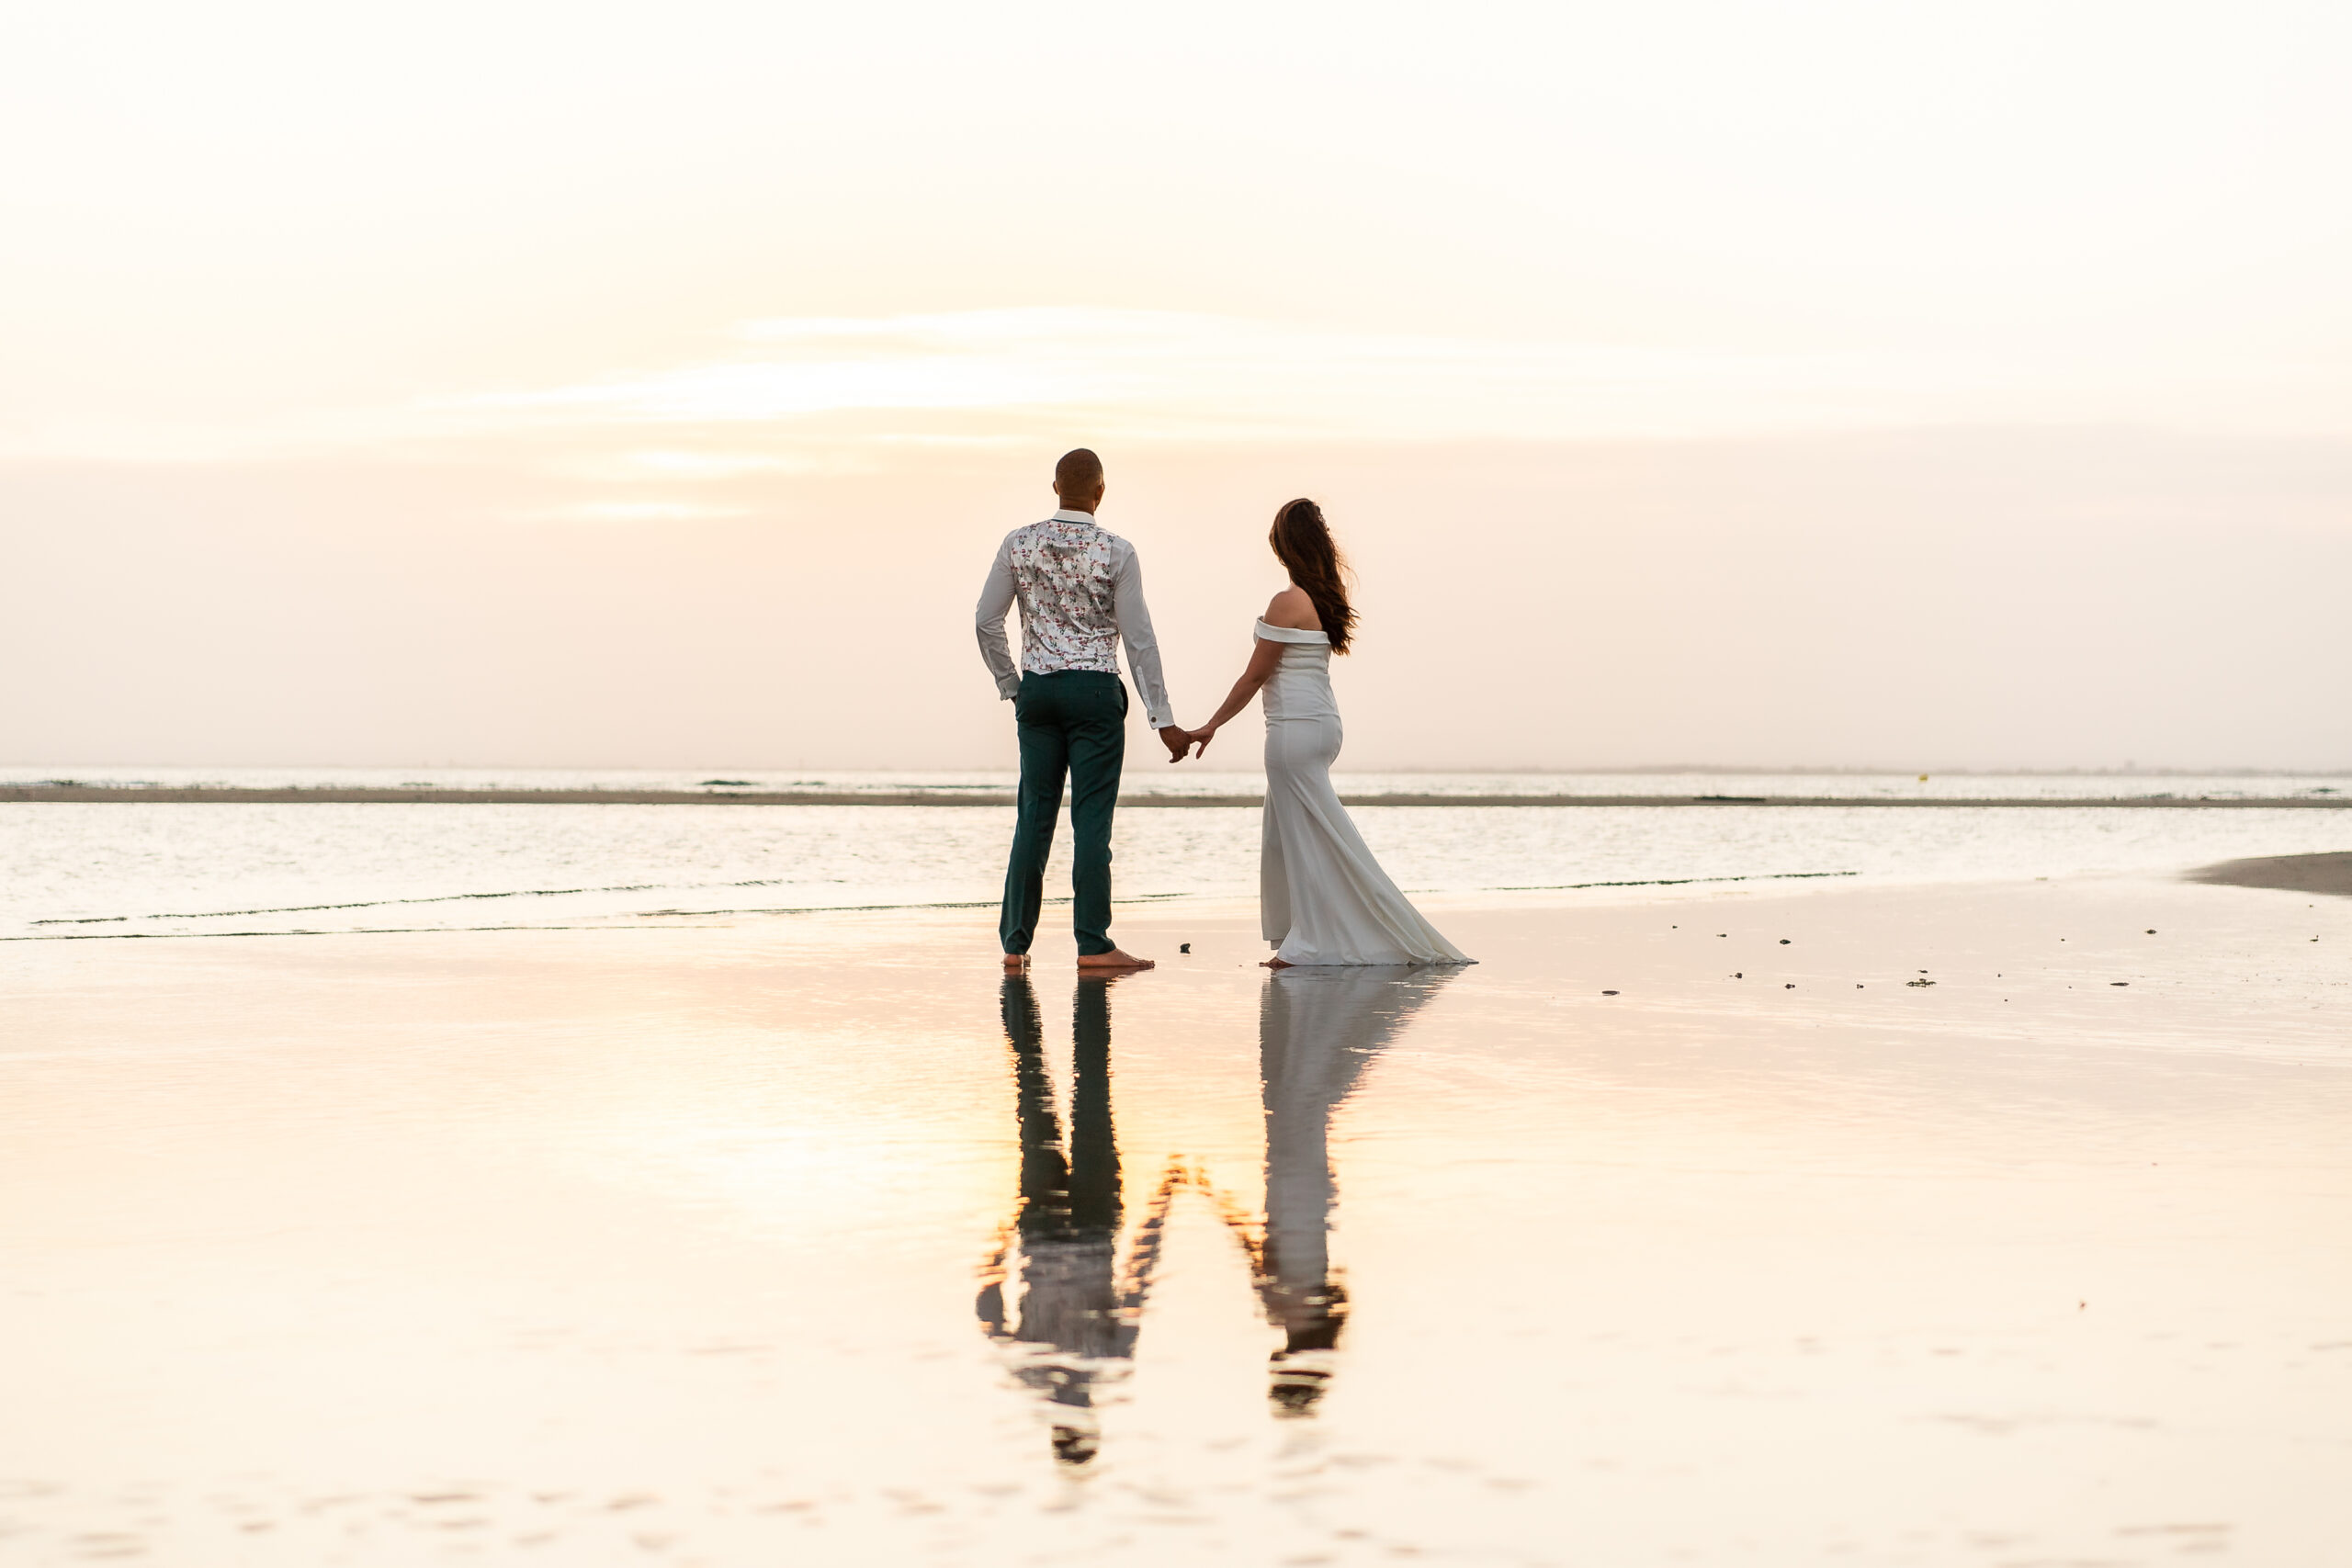 Séance Engement pour un jeune couple de futur mariés à la plage.